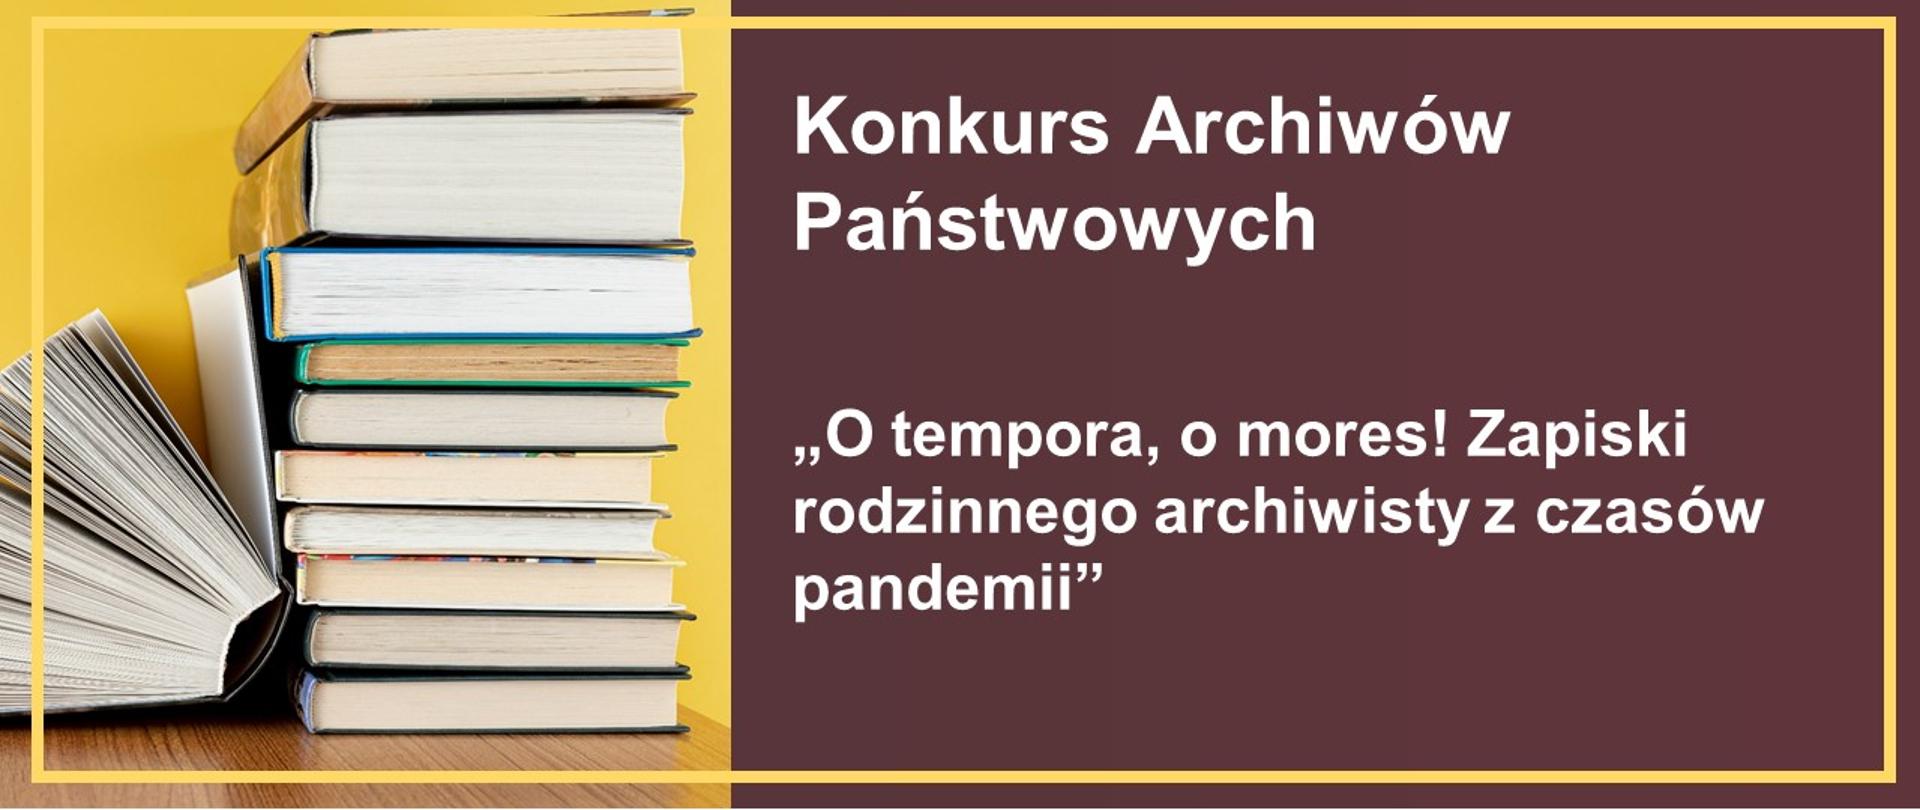 Napis: Konkurs Archiwów Państwowych „O tempora, o mores! Zapiski rodzinnego archiwisty z czasów pandemii" 